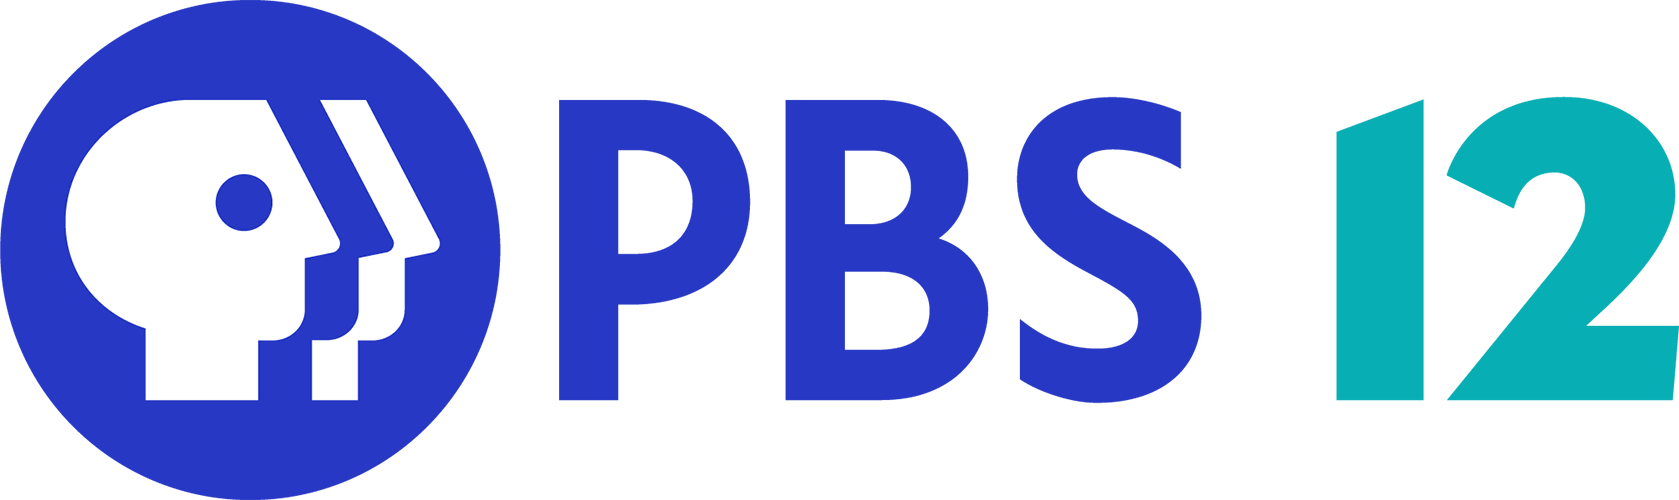 PBS 12 Denver CO (KBDI)